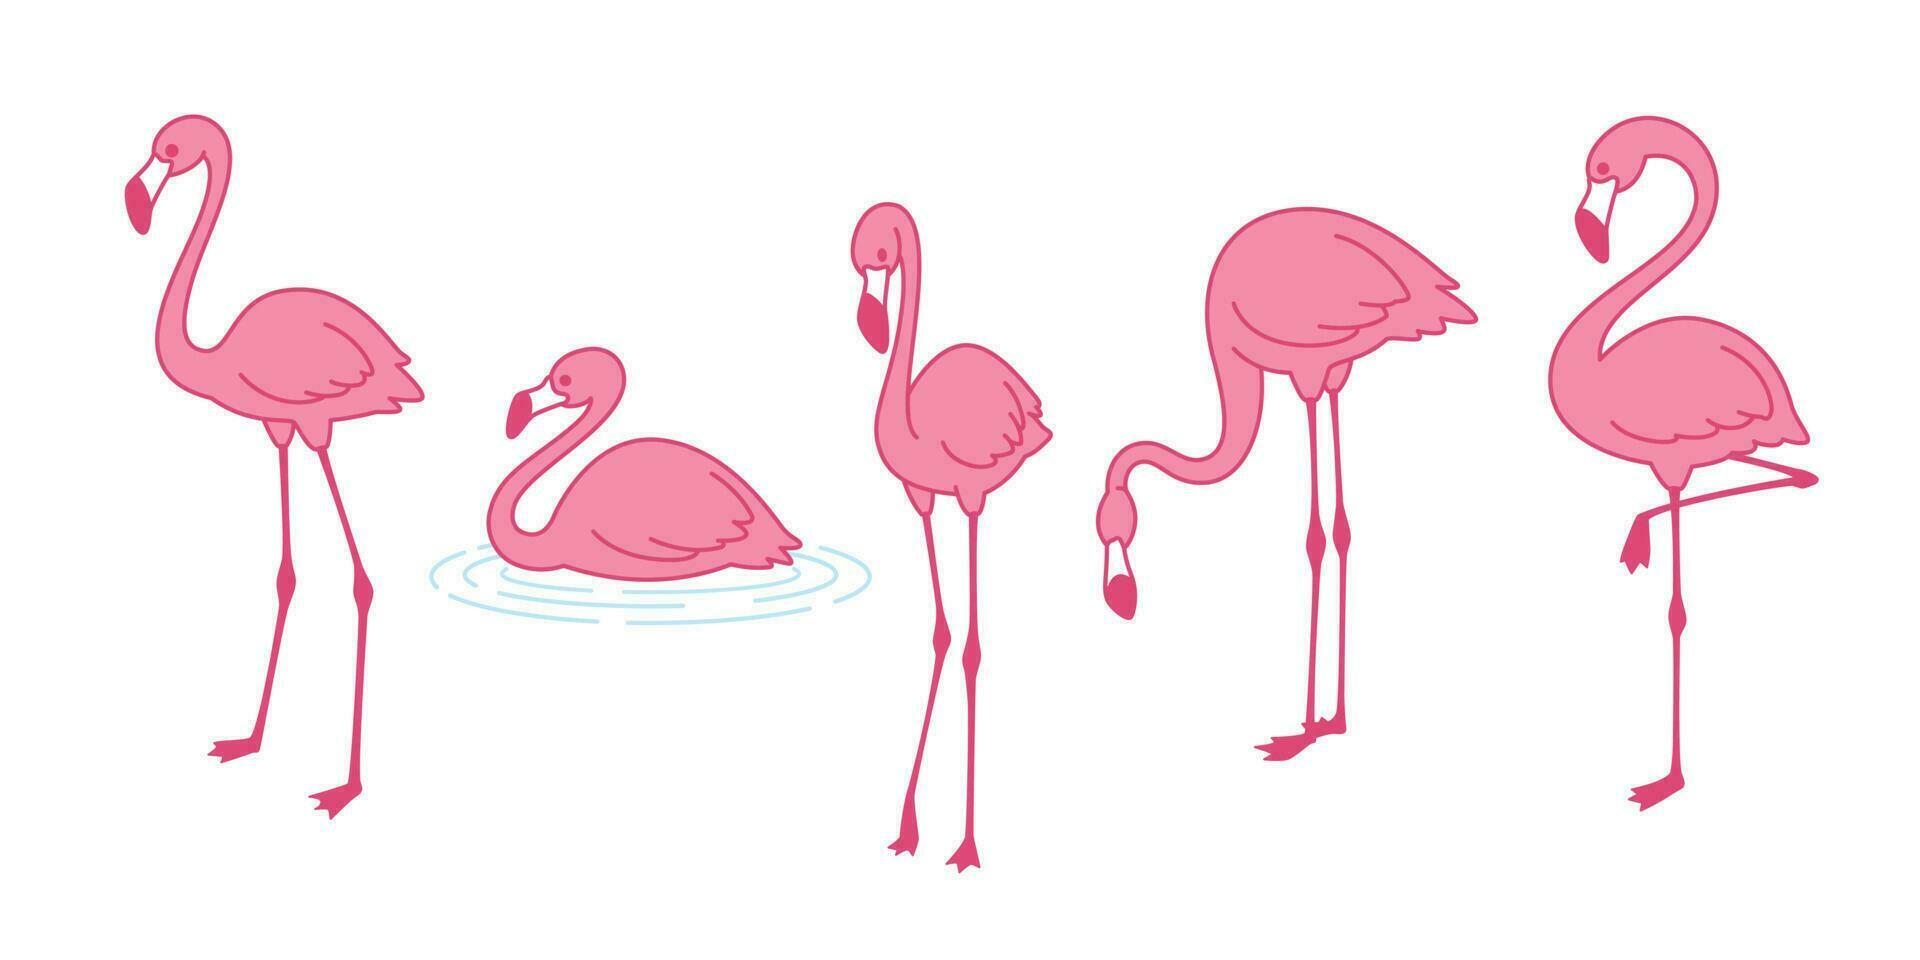 dibujos animados rosado flamenco vector conjunto icono linda flamencos colección flamenco personaje animal exótico naturaleza salvaje fauna ilustración garabatear